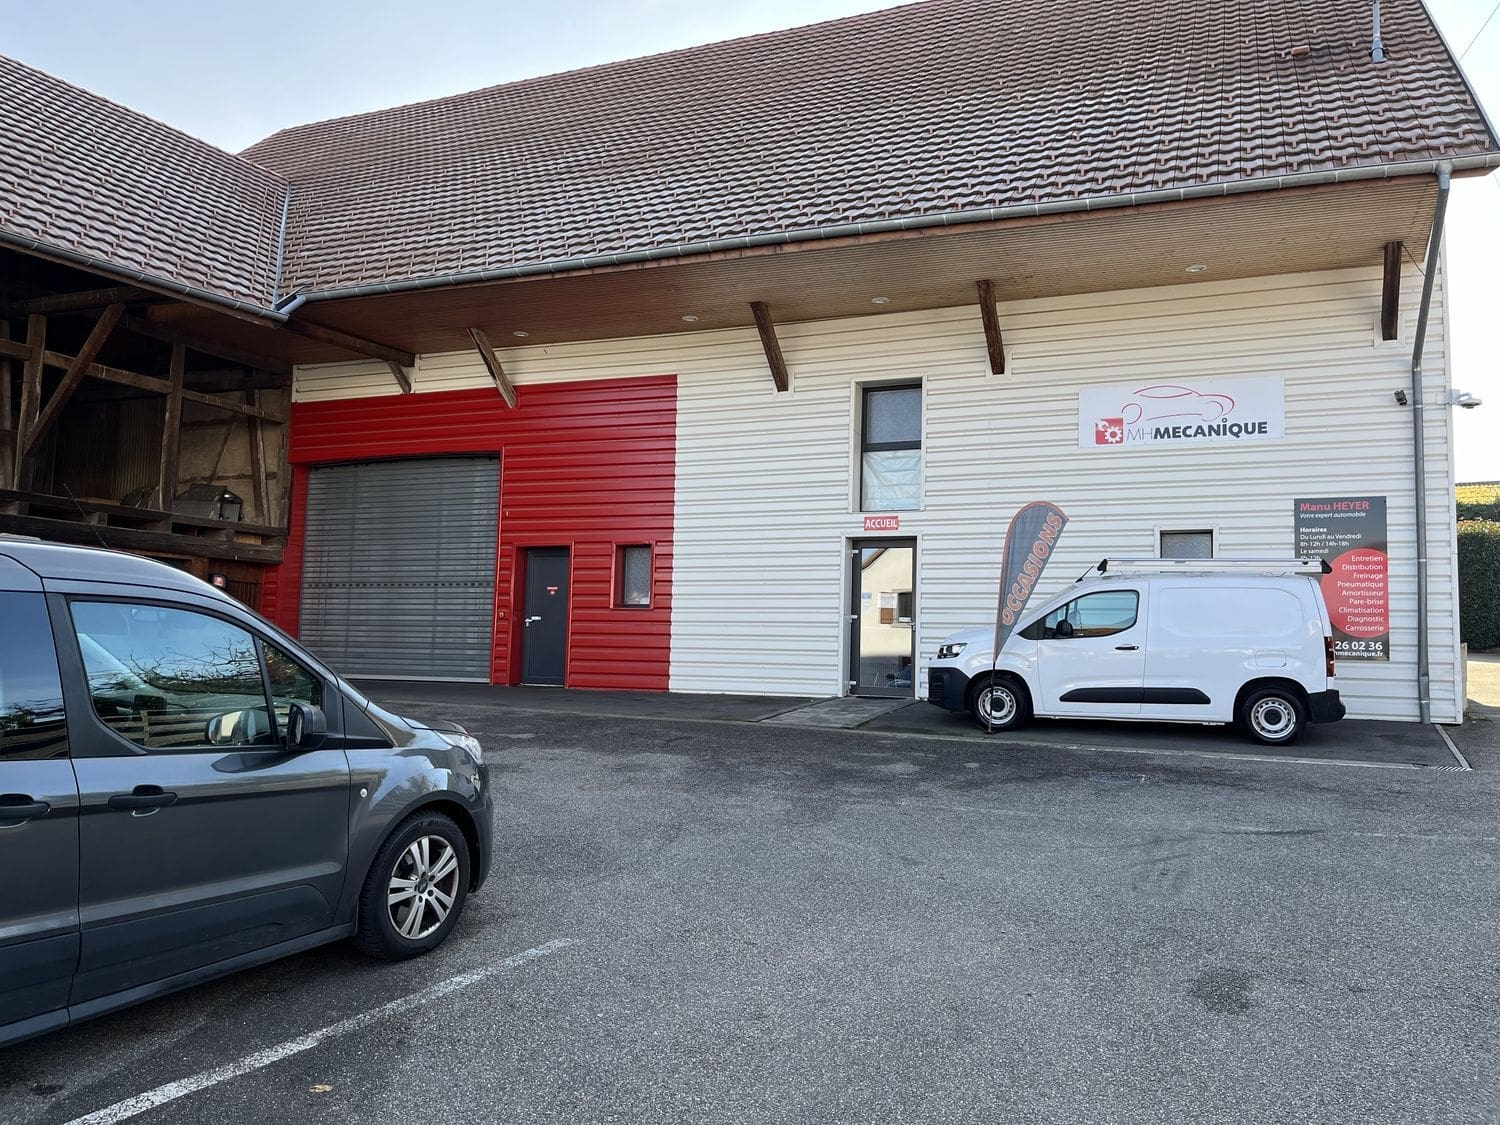 MH Mécanique, garage automobile à Burnhaupt-Le-Bas près de Mulhouse, dans le Haut-Rhin 68